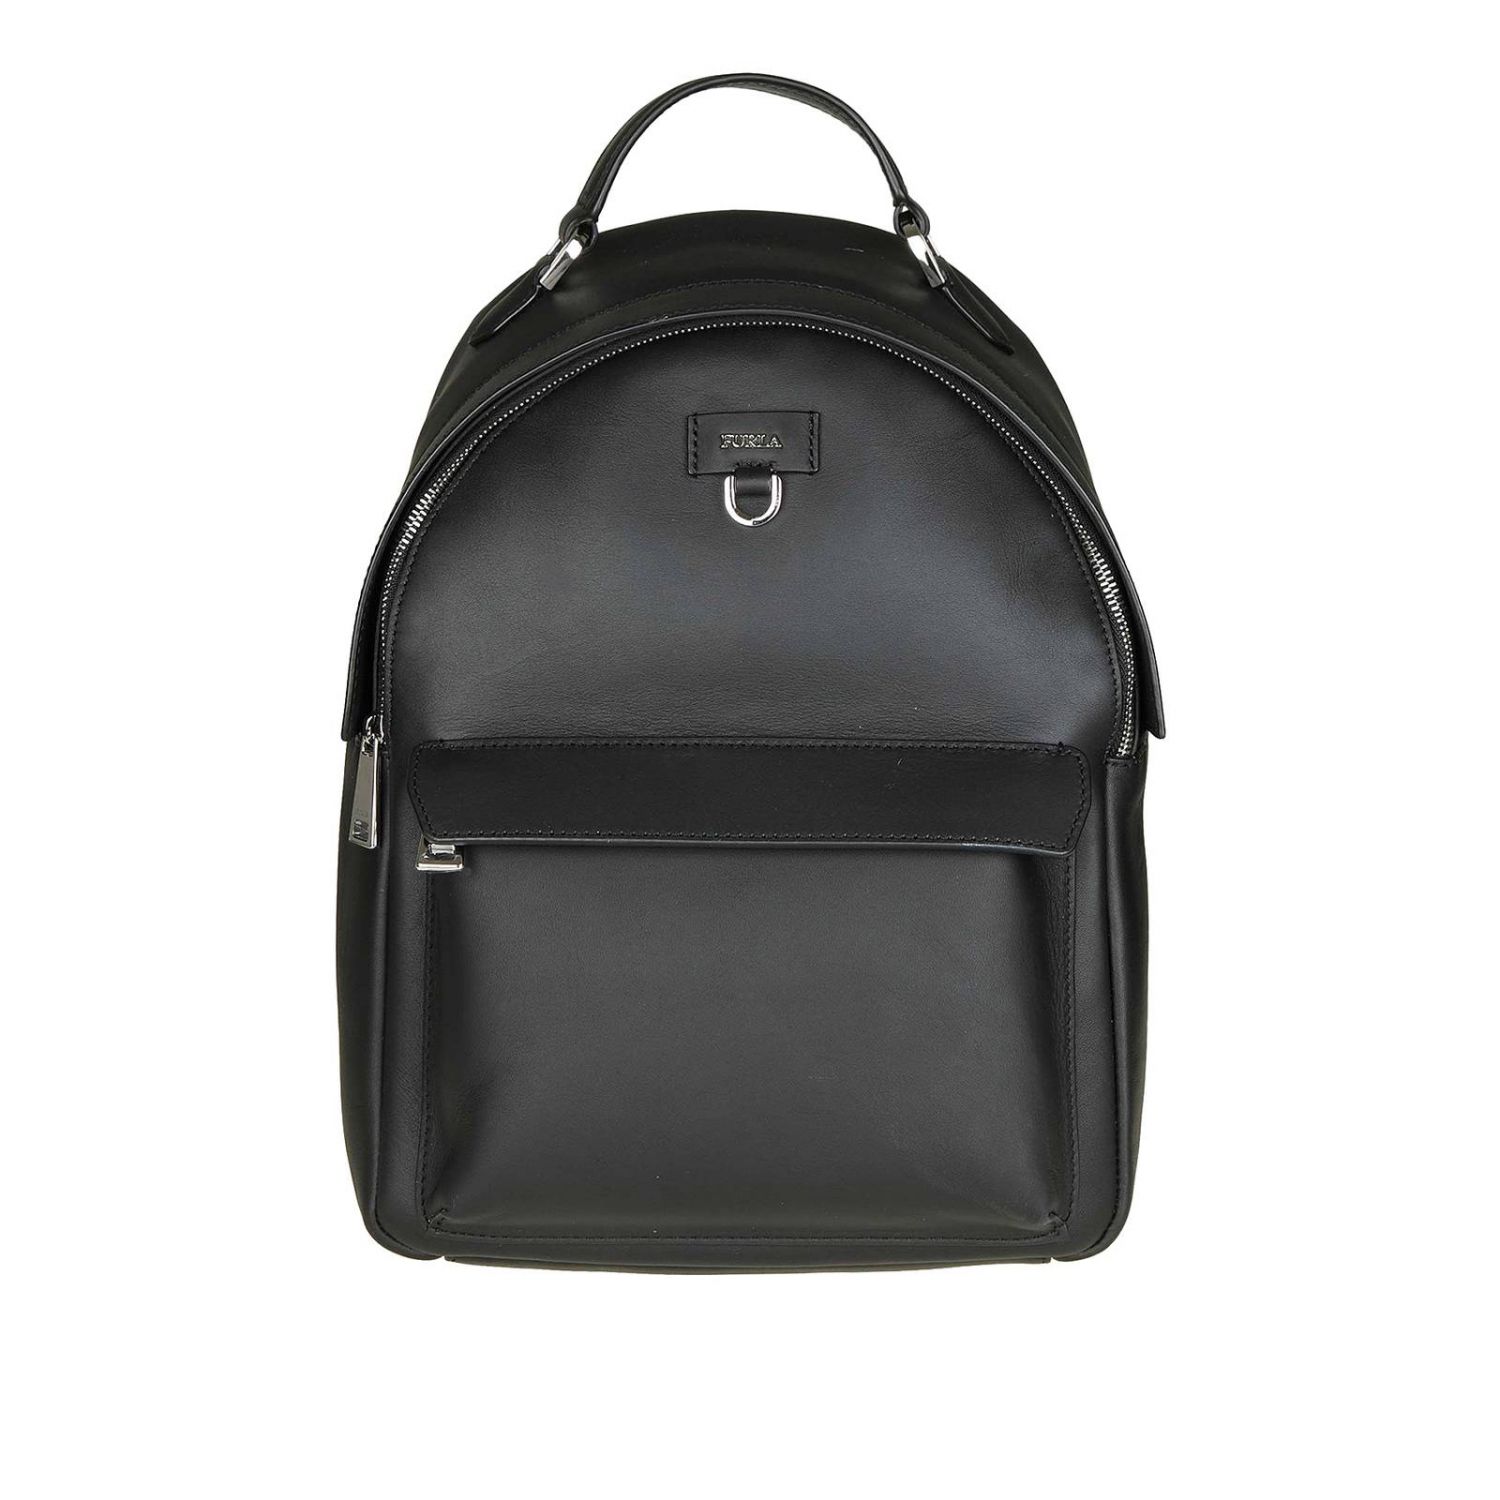 Furla Outlet: backpack for woman - Black | Furla backpack 998401 online ...